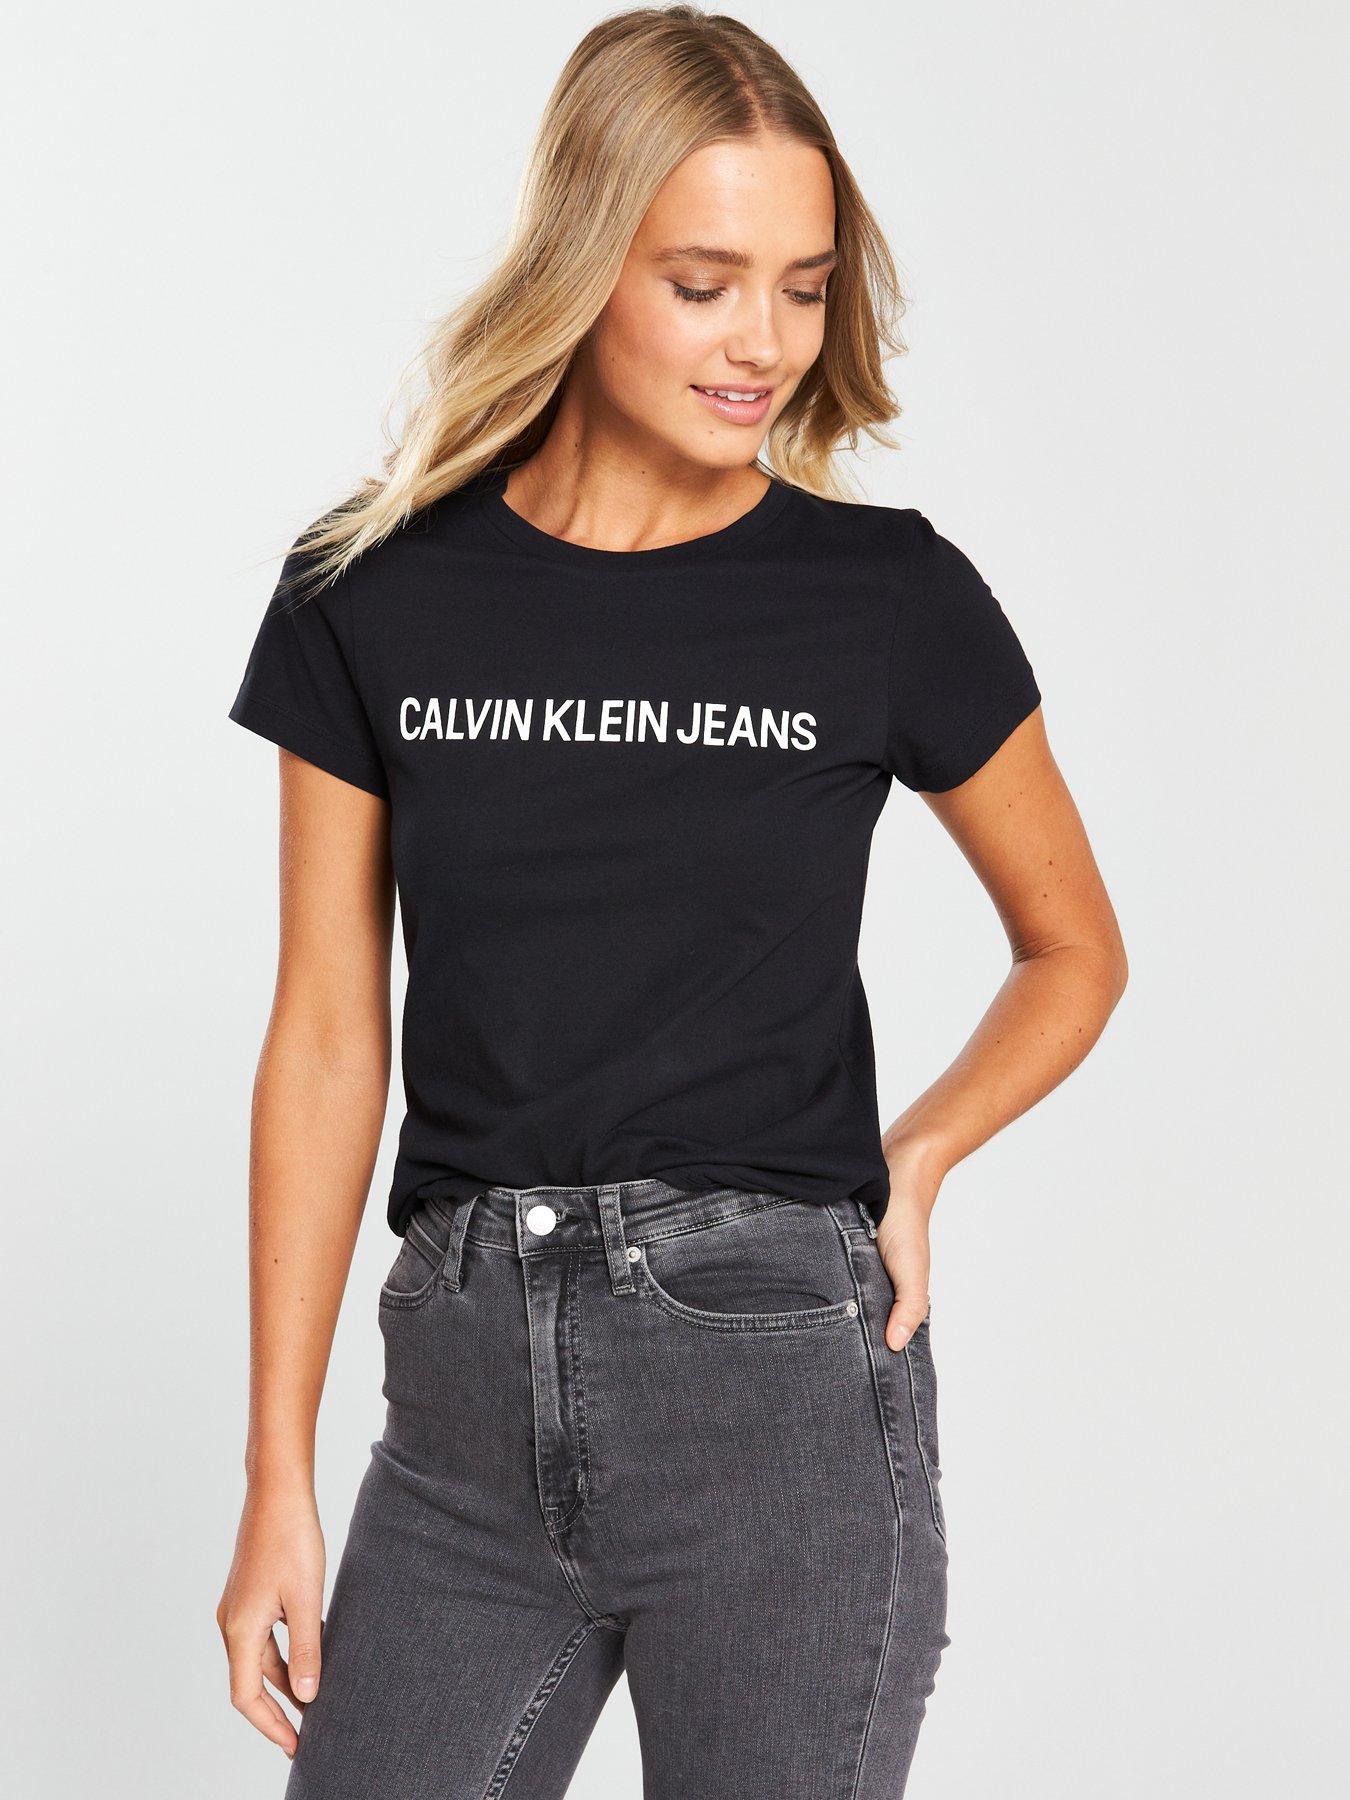 calvin klein jeans sweatshirt black